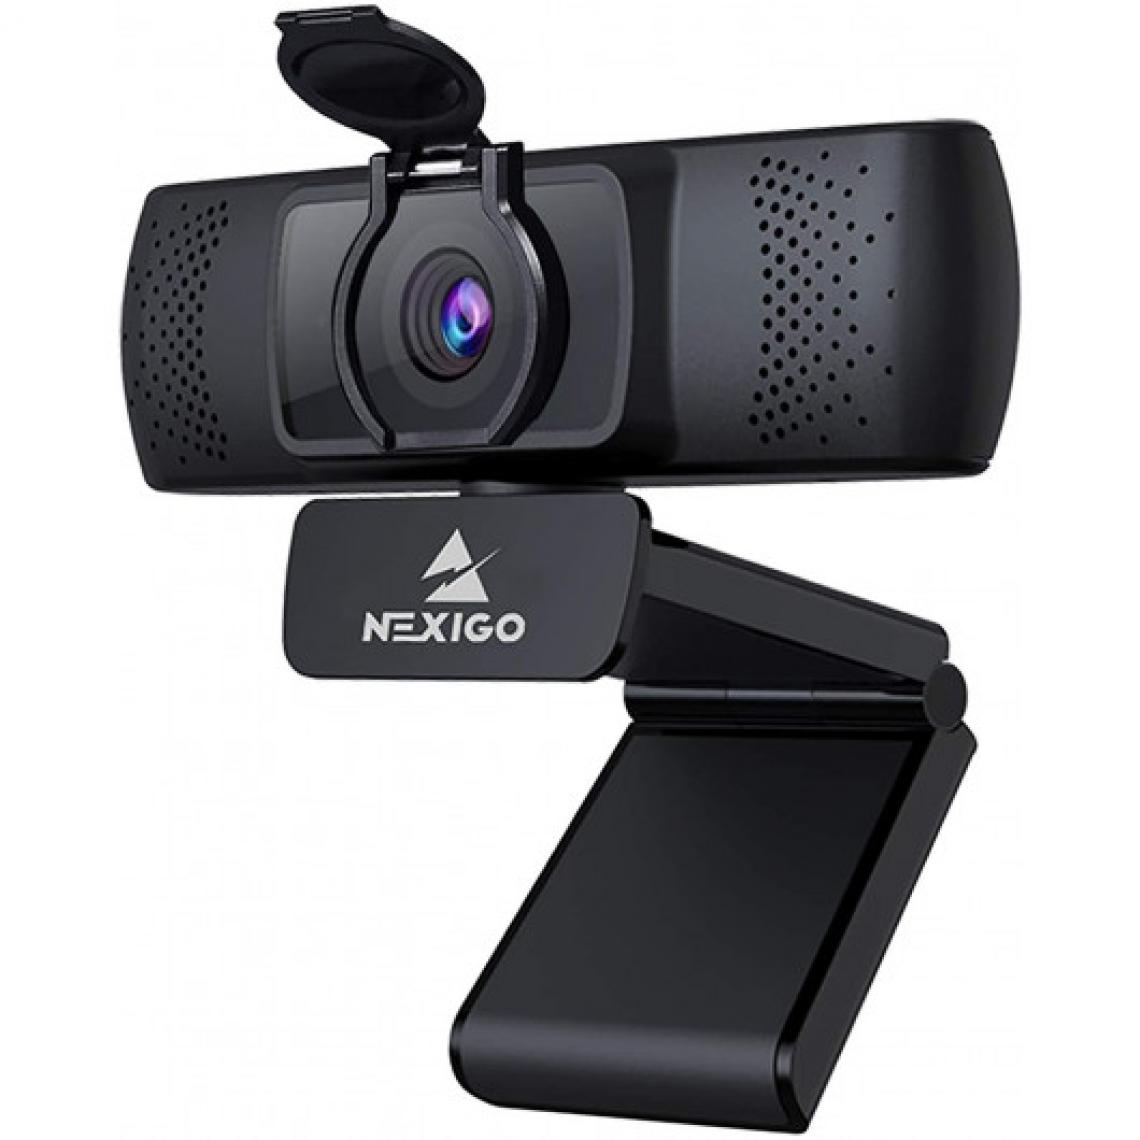 Ofs Selection - NexiGo N930P, la webcam ergonomique - Webcam